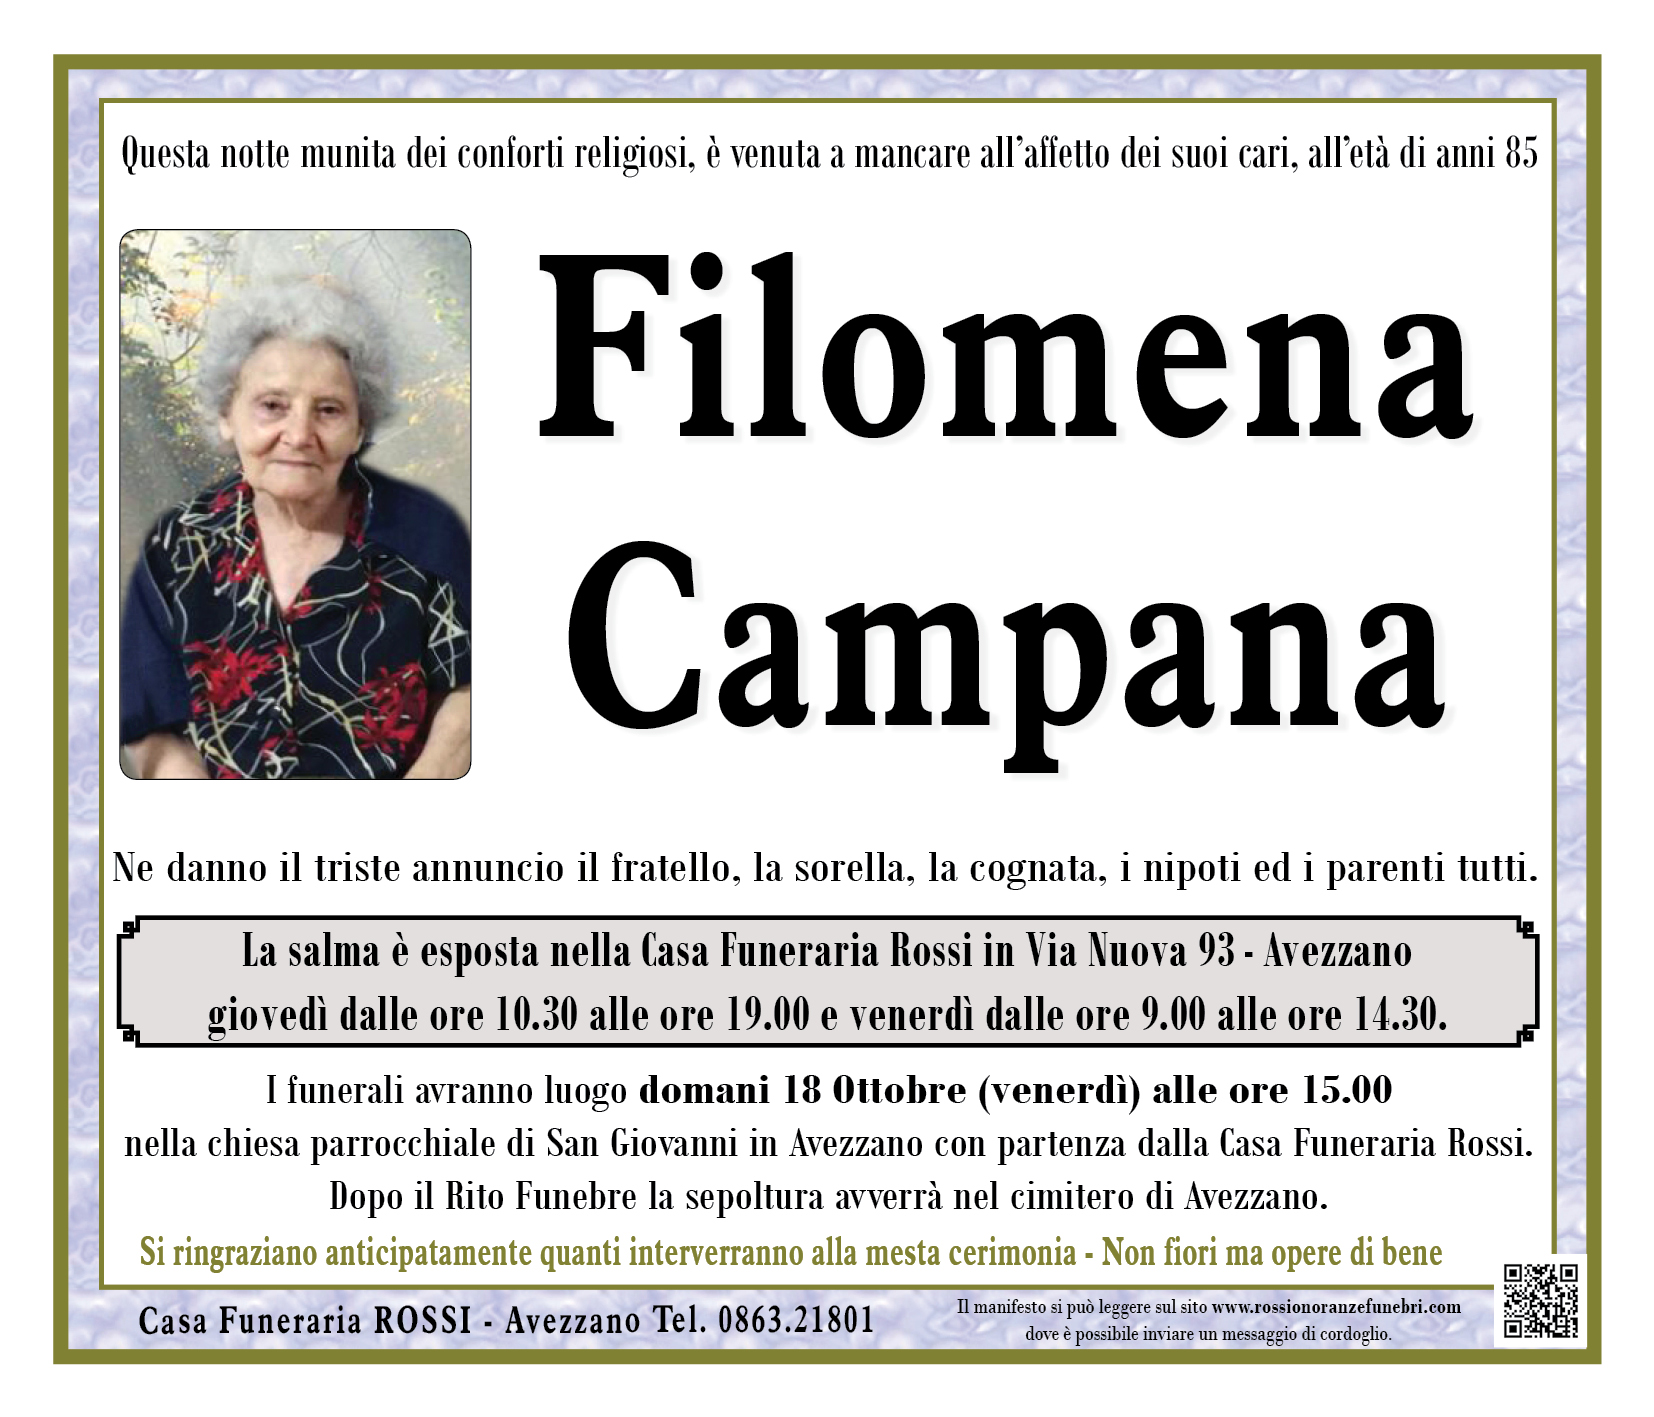 Filomena Campana